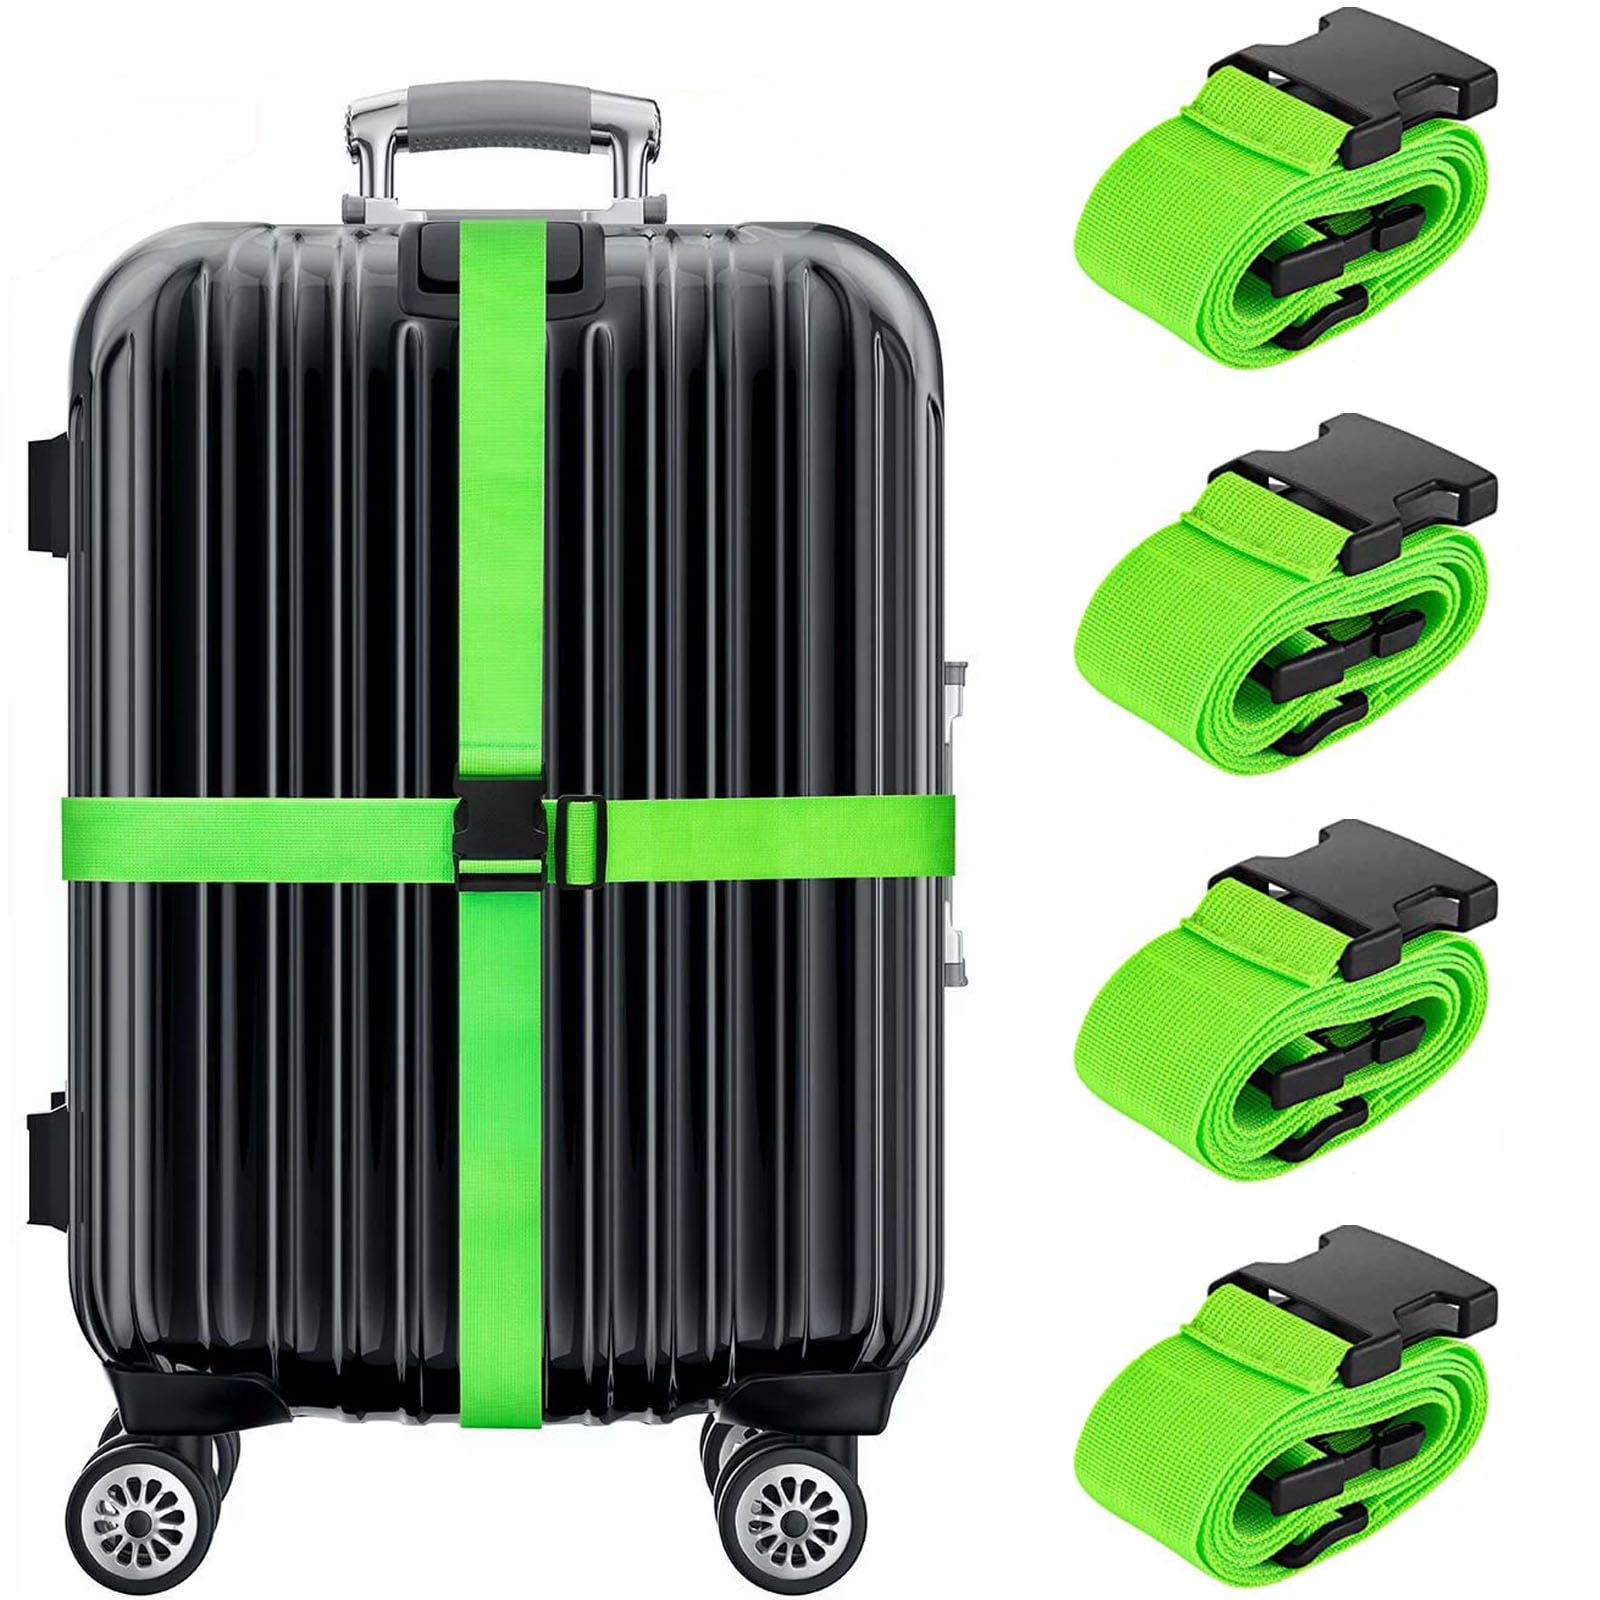 Wusi 4 Pack Luggage Straps Suitcase Belt, Travel Adjustable Suitcase ...